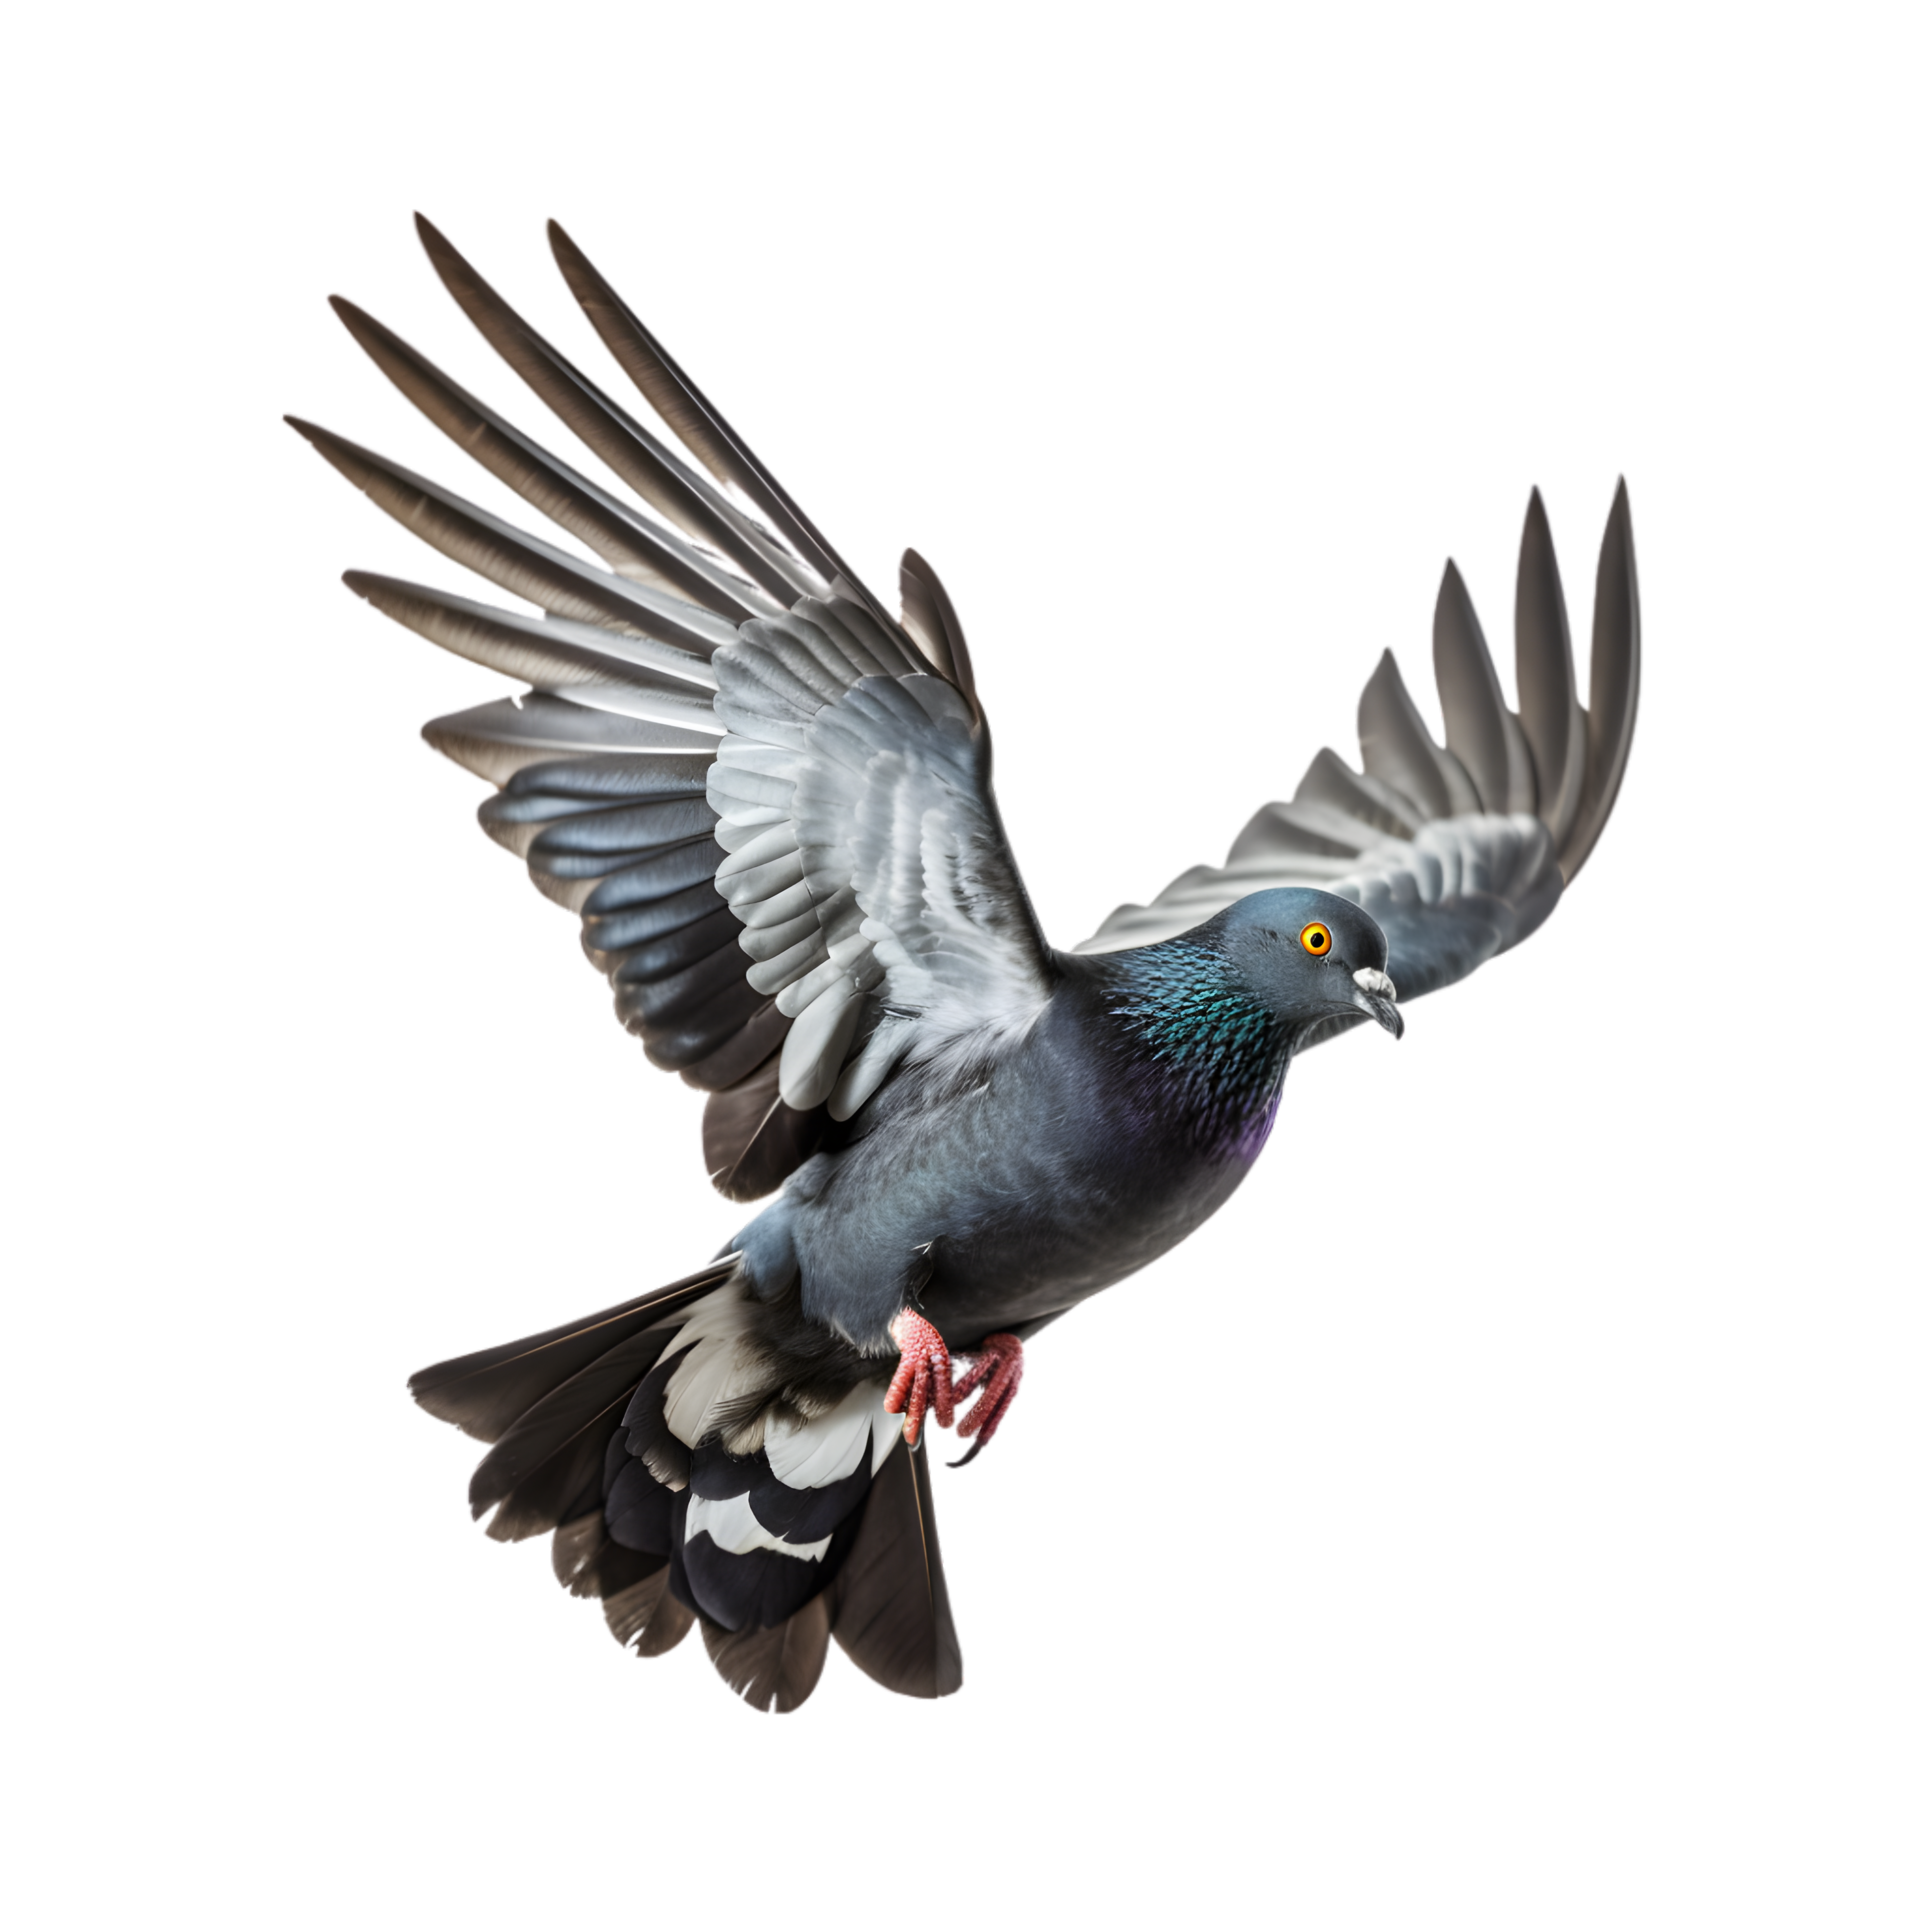 roller pigeons flying